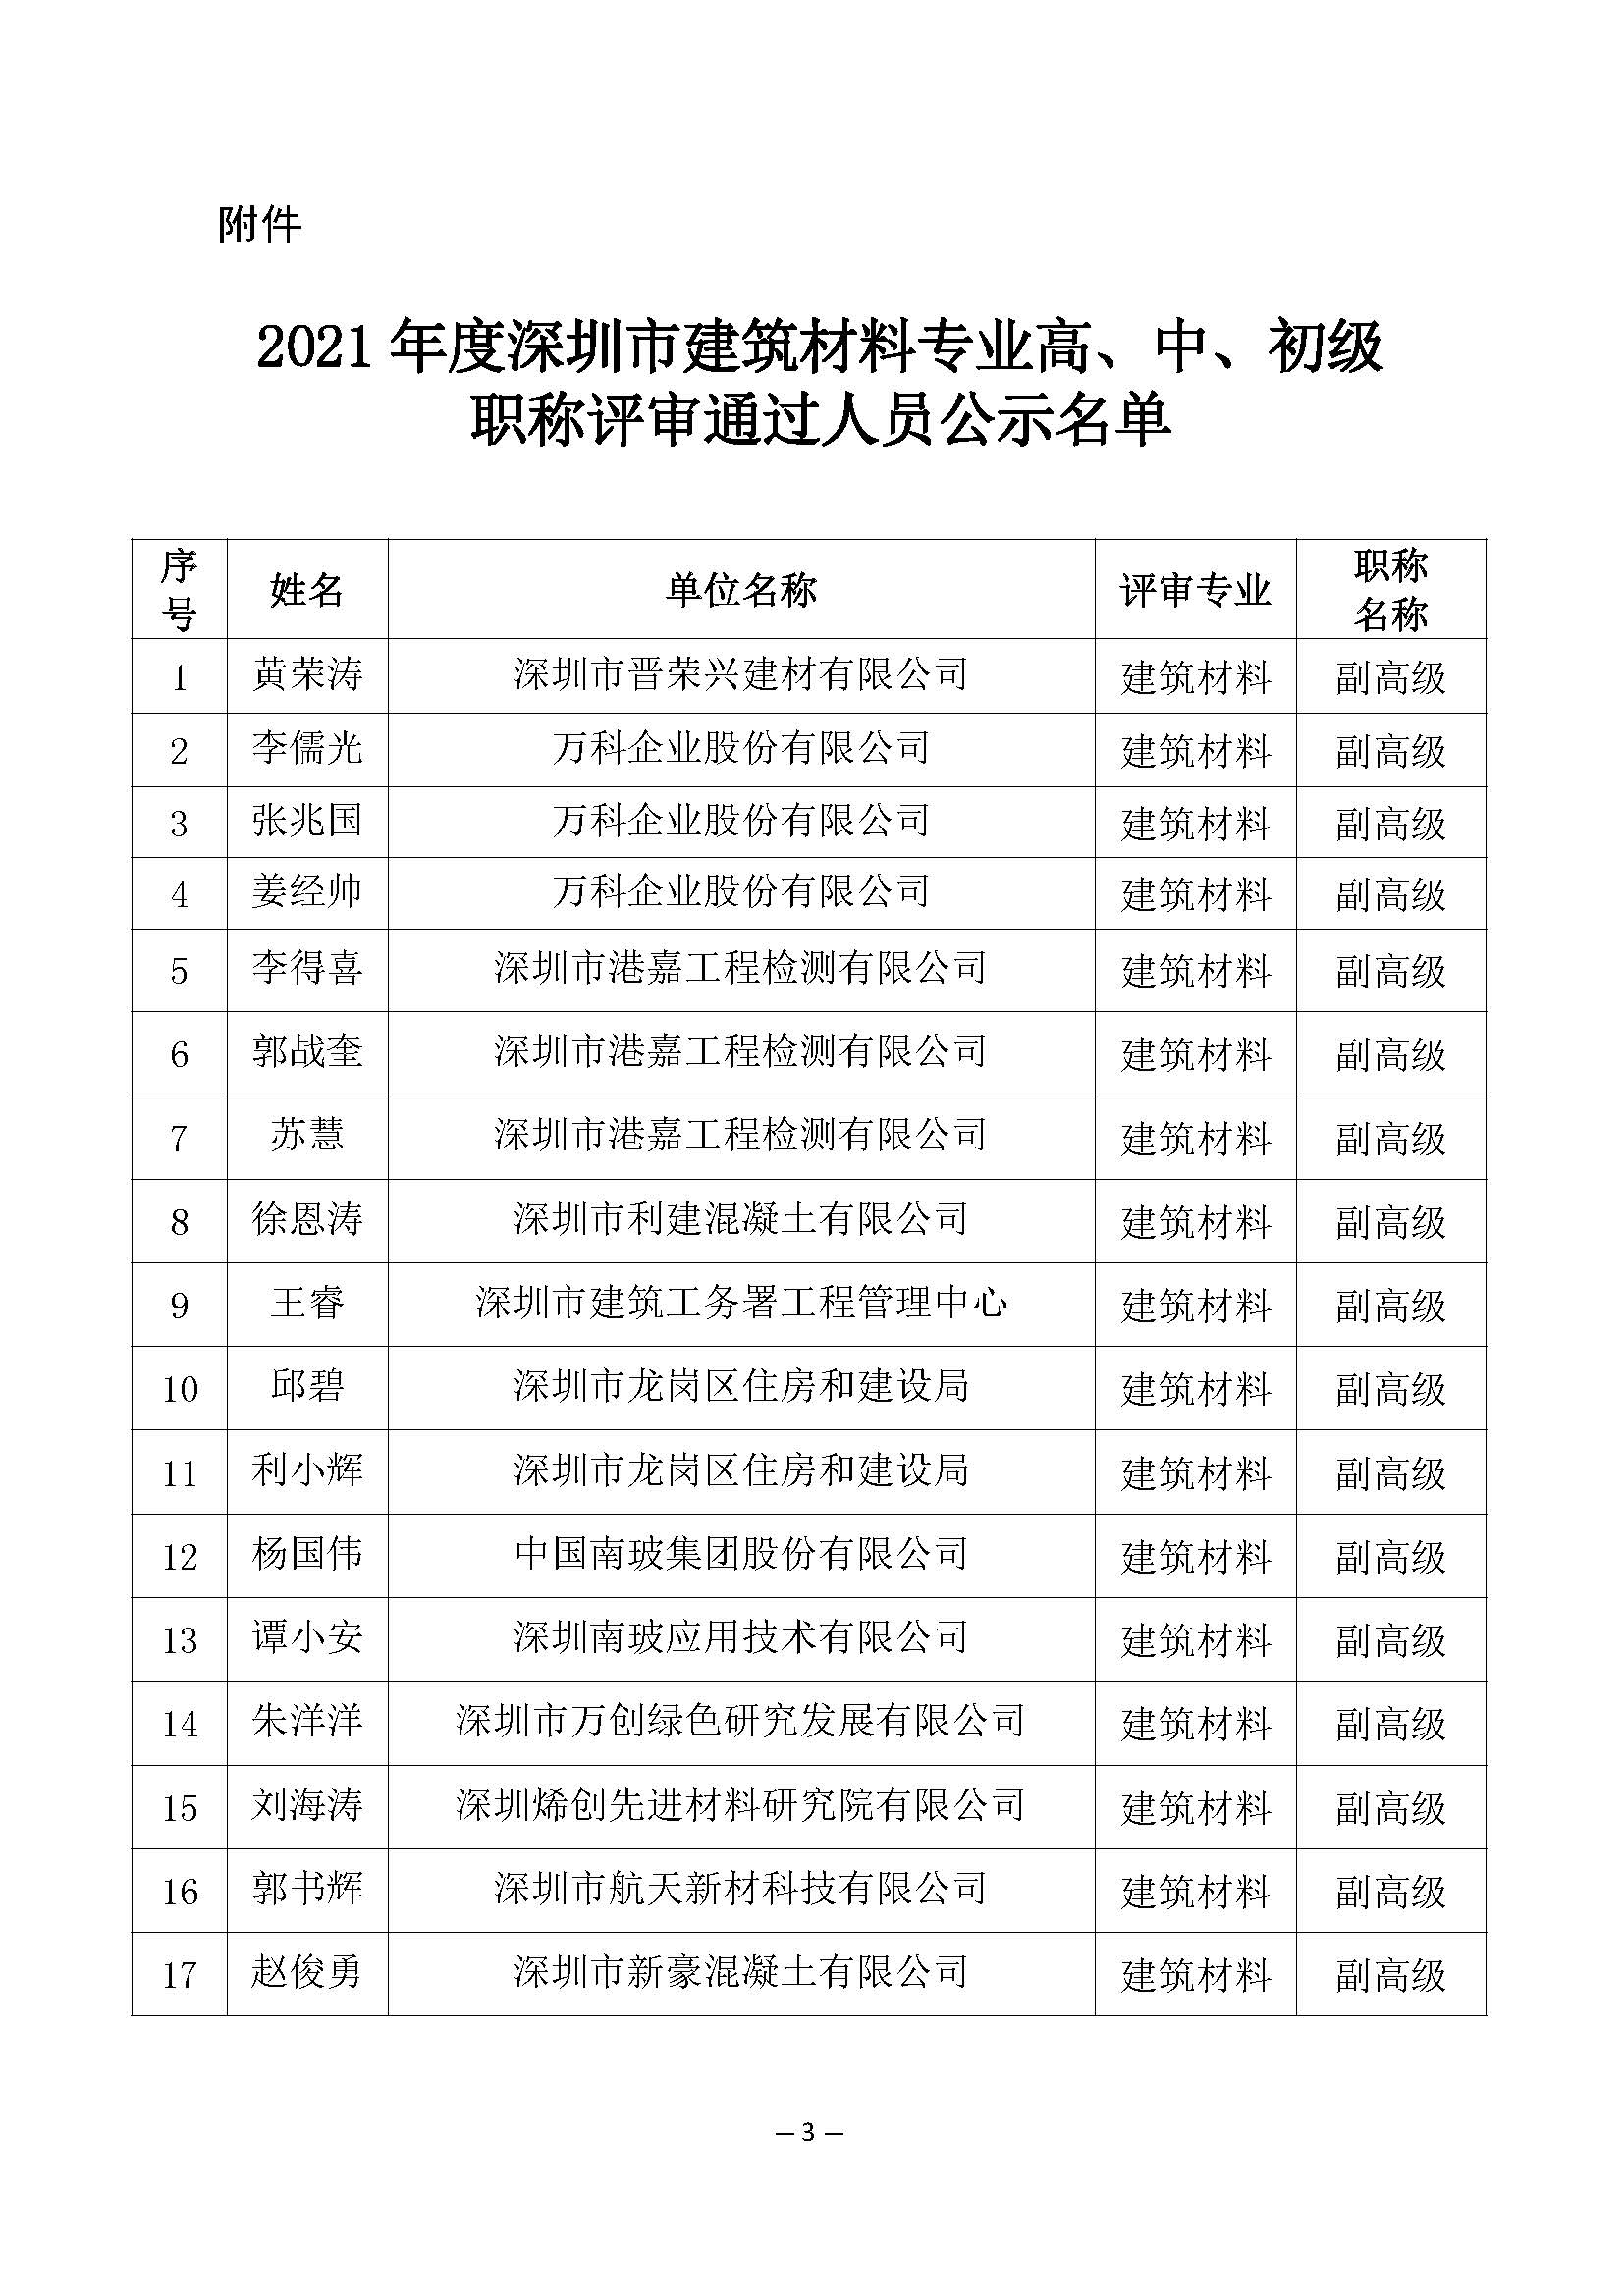 2021年度深圳市建筑材料专业高级职称评审委员会建筑材料专业高、中、初级职称评审通过人员公示_页面_3.jpg